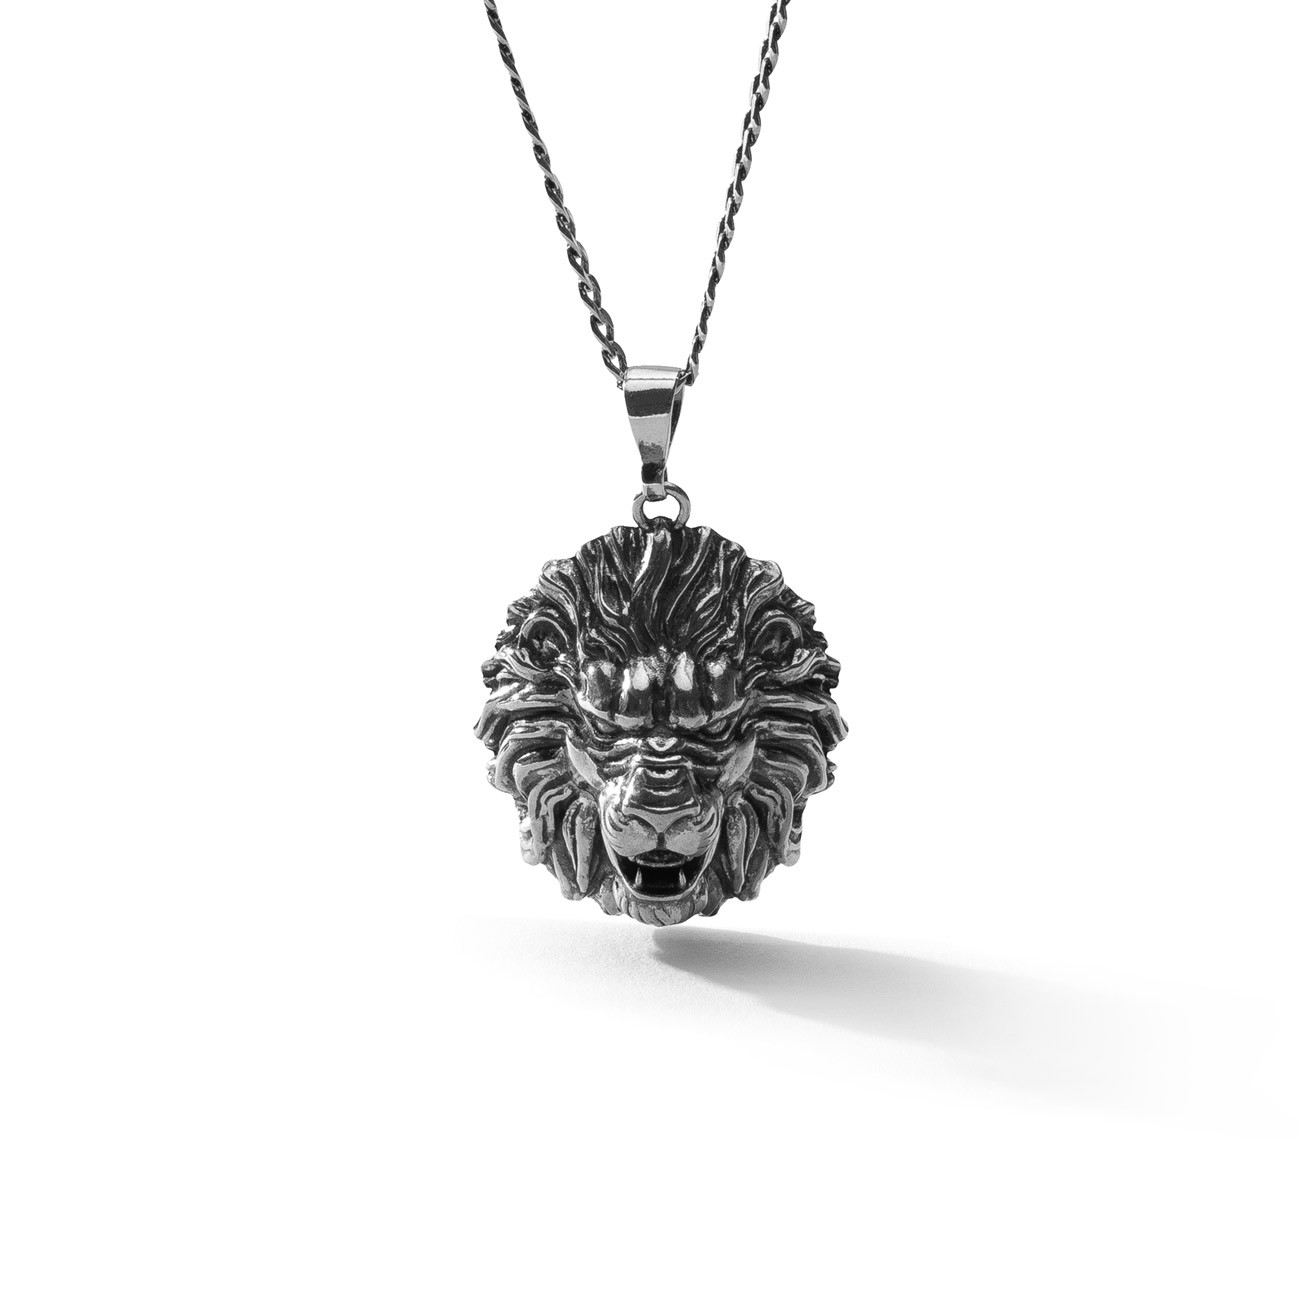 Lion necklace, silver 925